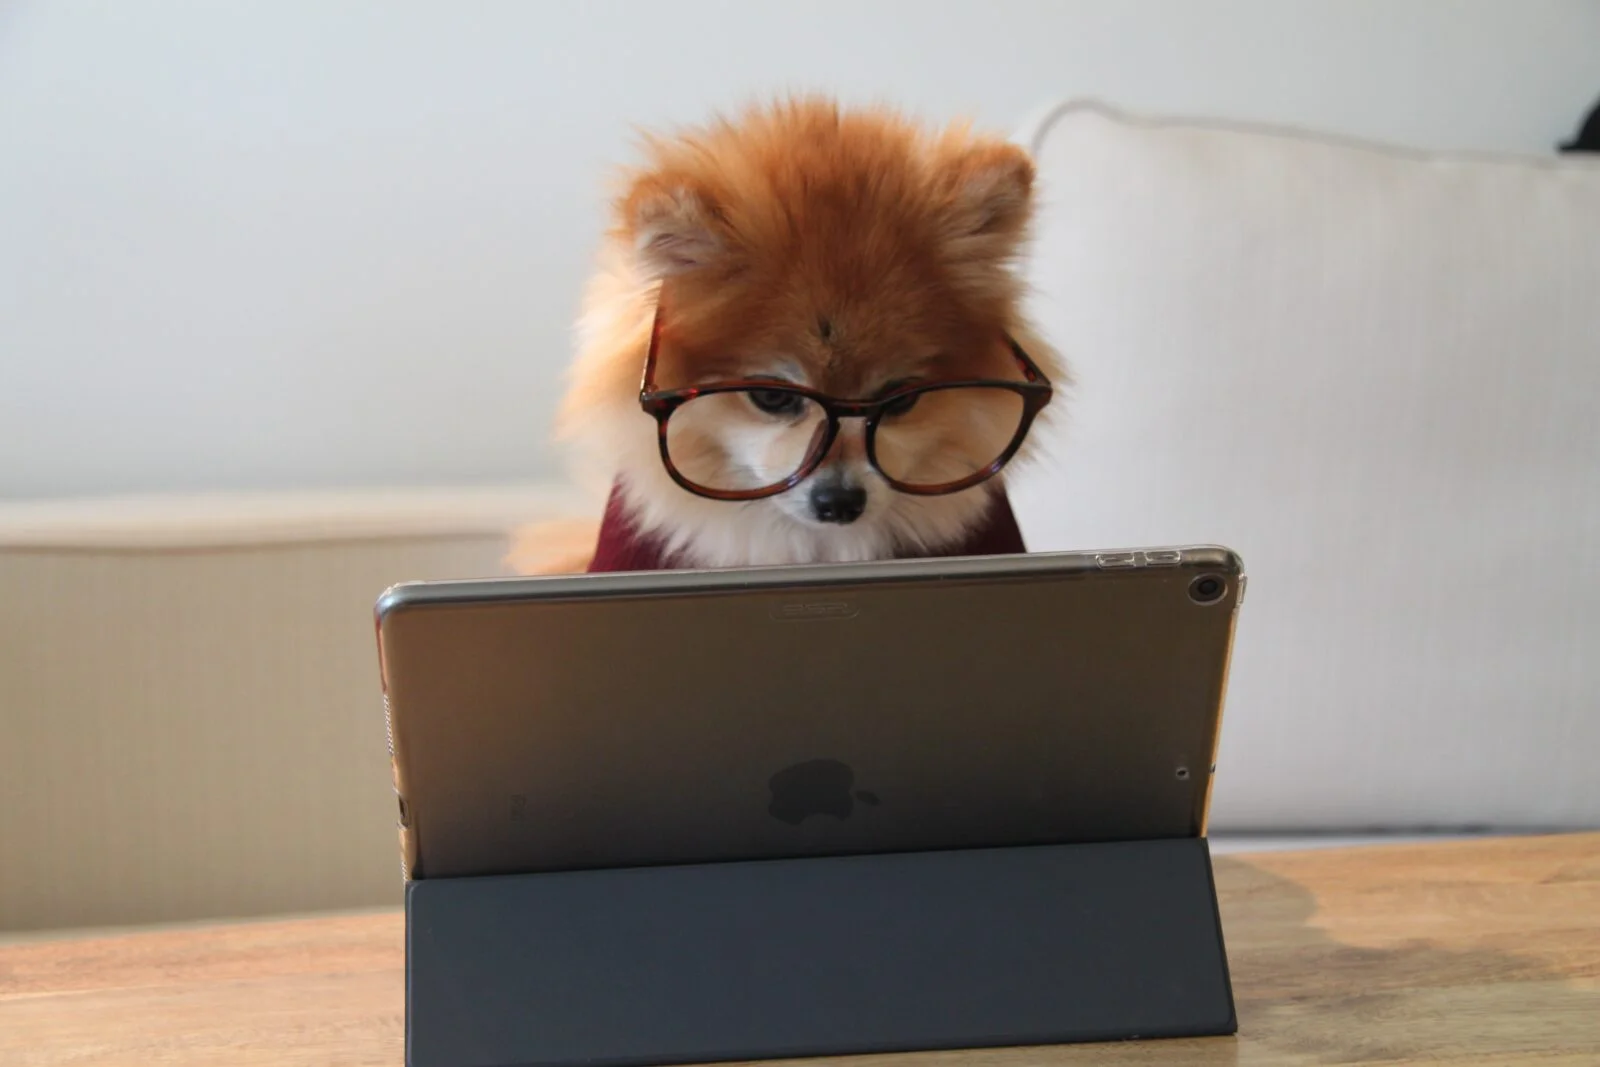 Landingpage dog working on laptop